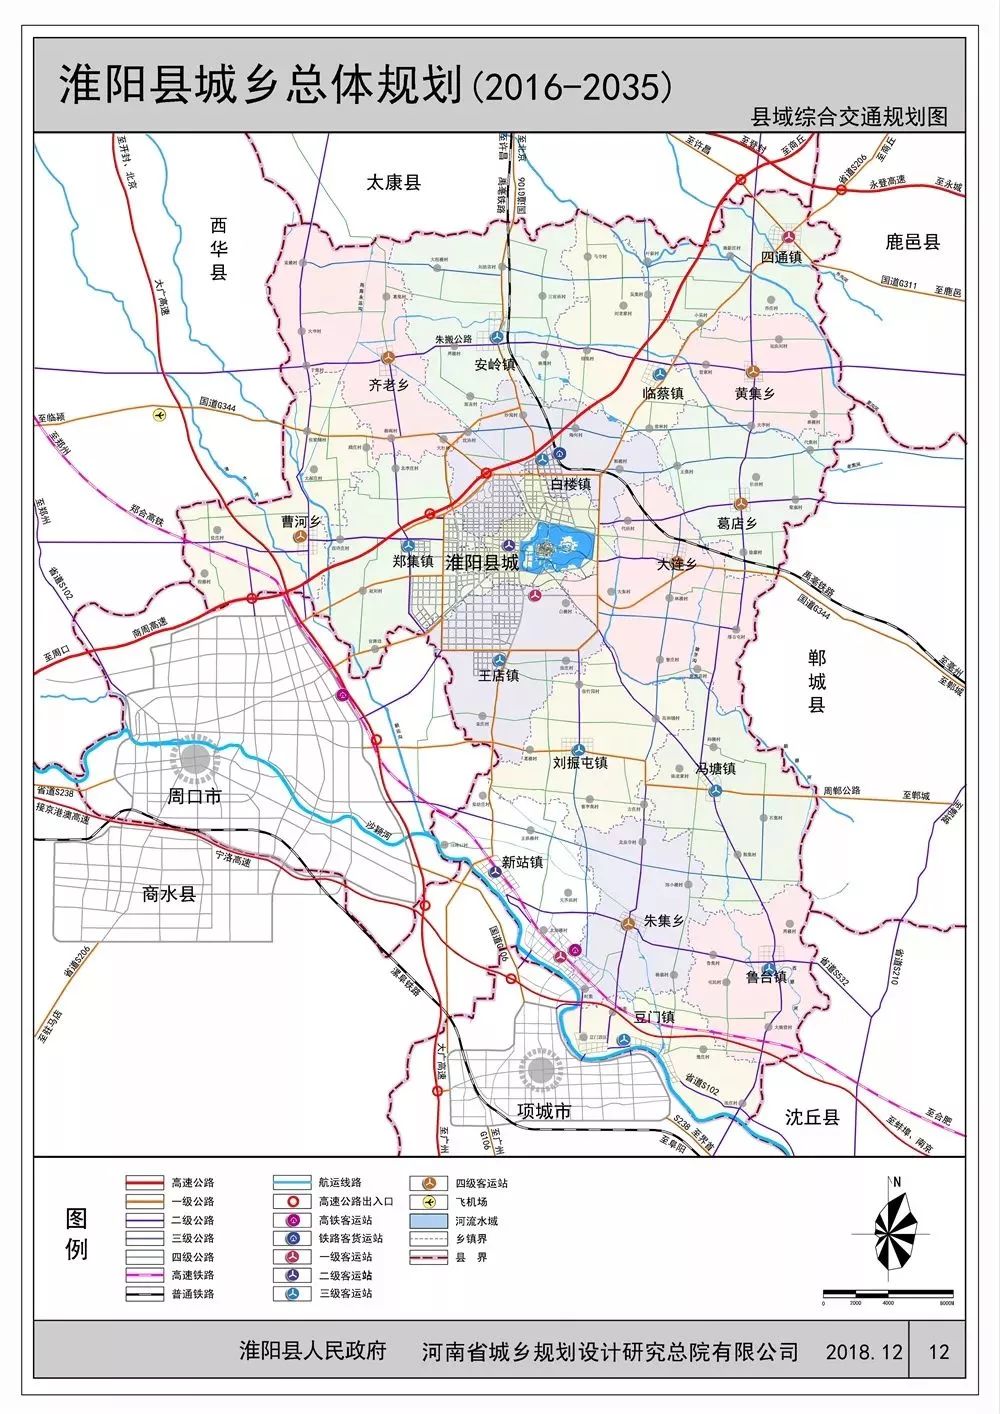 淮阳县城乡总体规划(2016-2035)获批!将迎来大发展